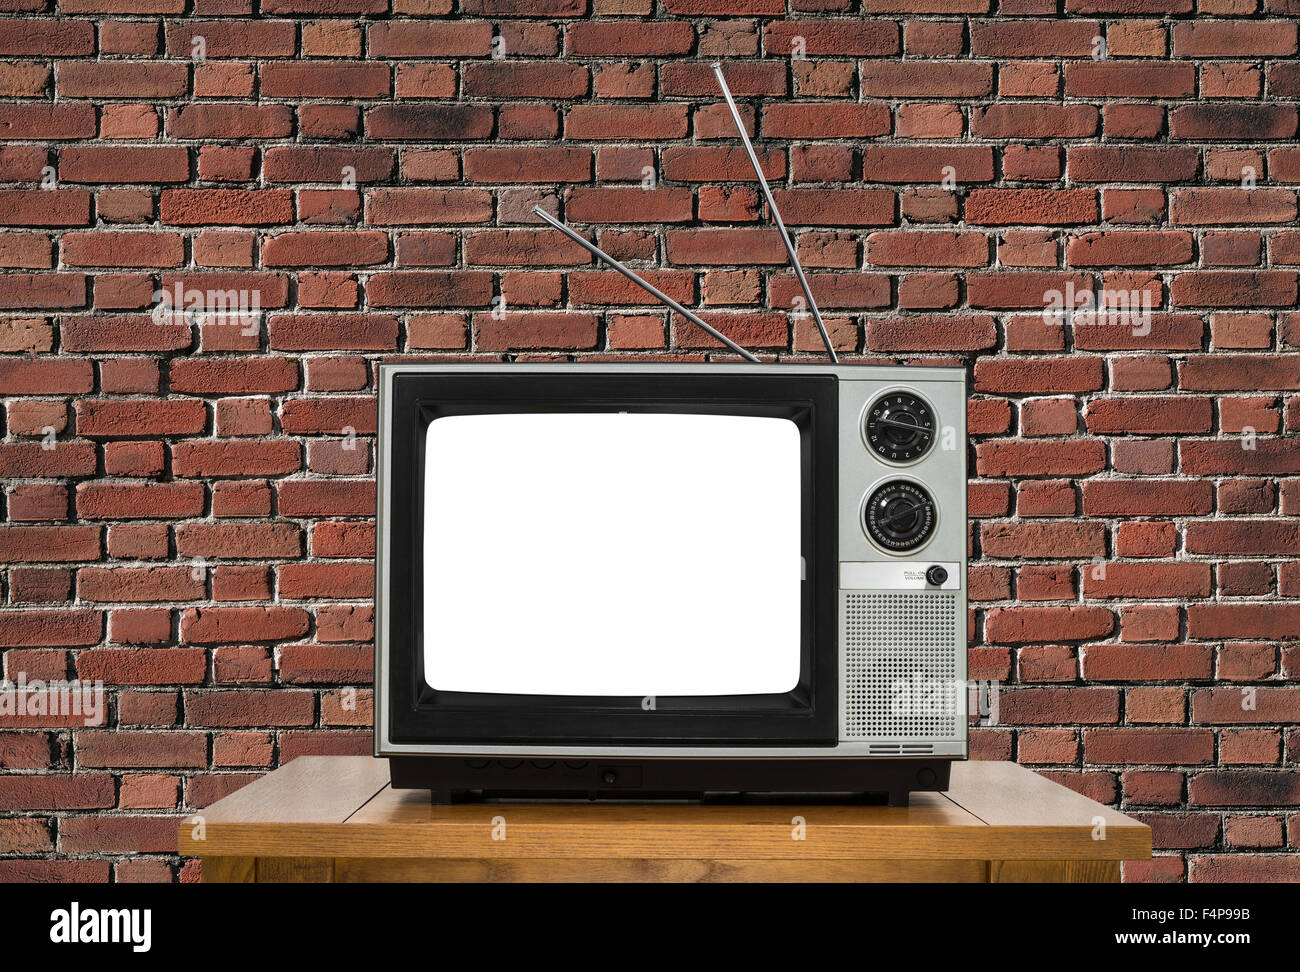 Ancien téléviseur analogique avec écran découpe et mur de briques. Banque D'Images